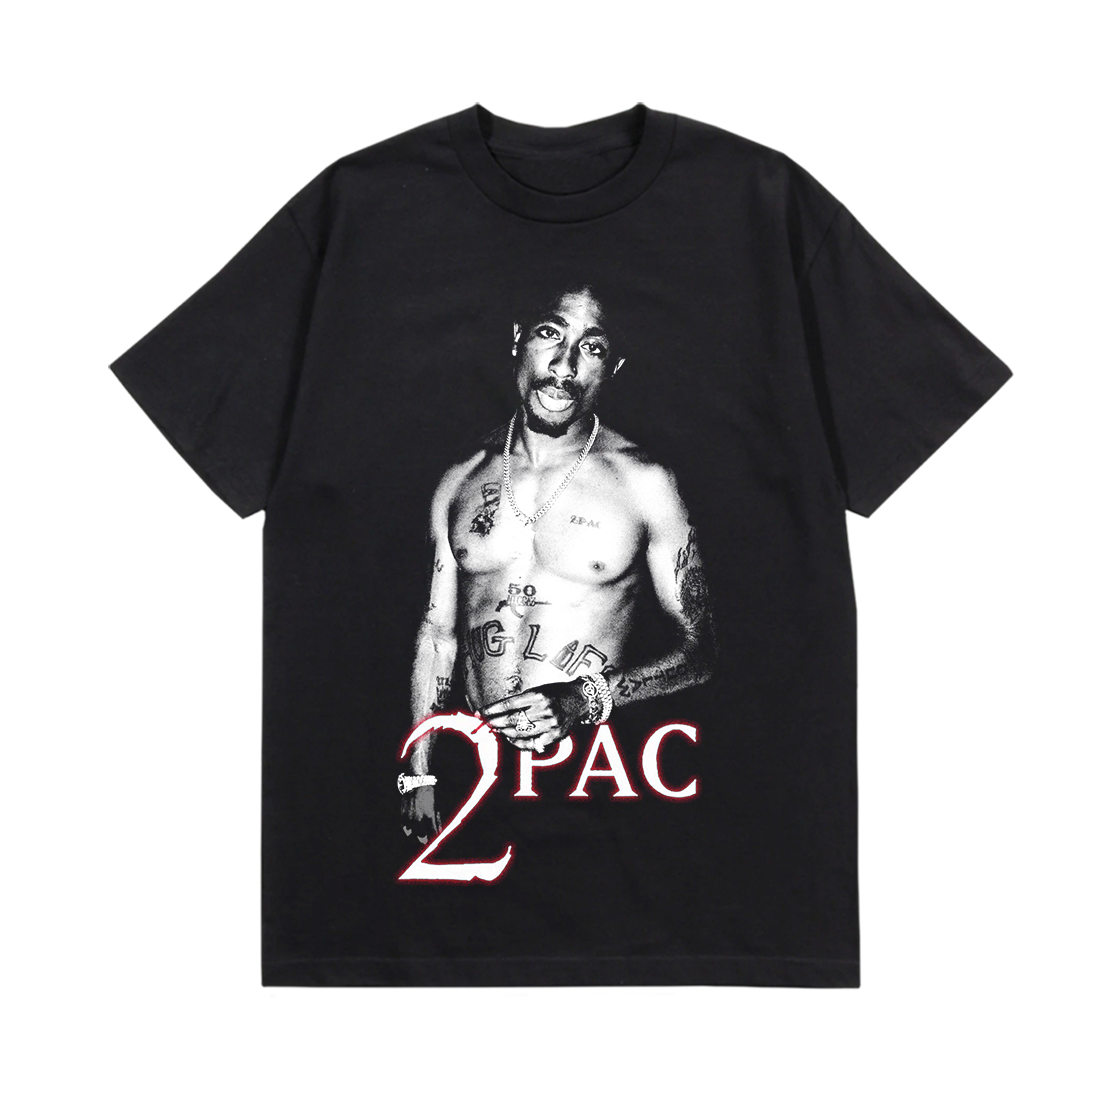 2Pac - Holla At Me: T-Shirt